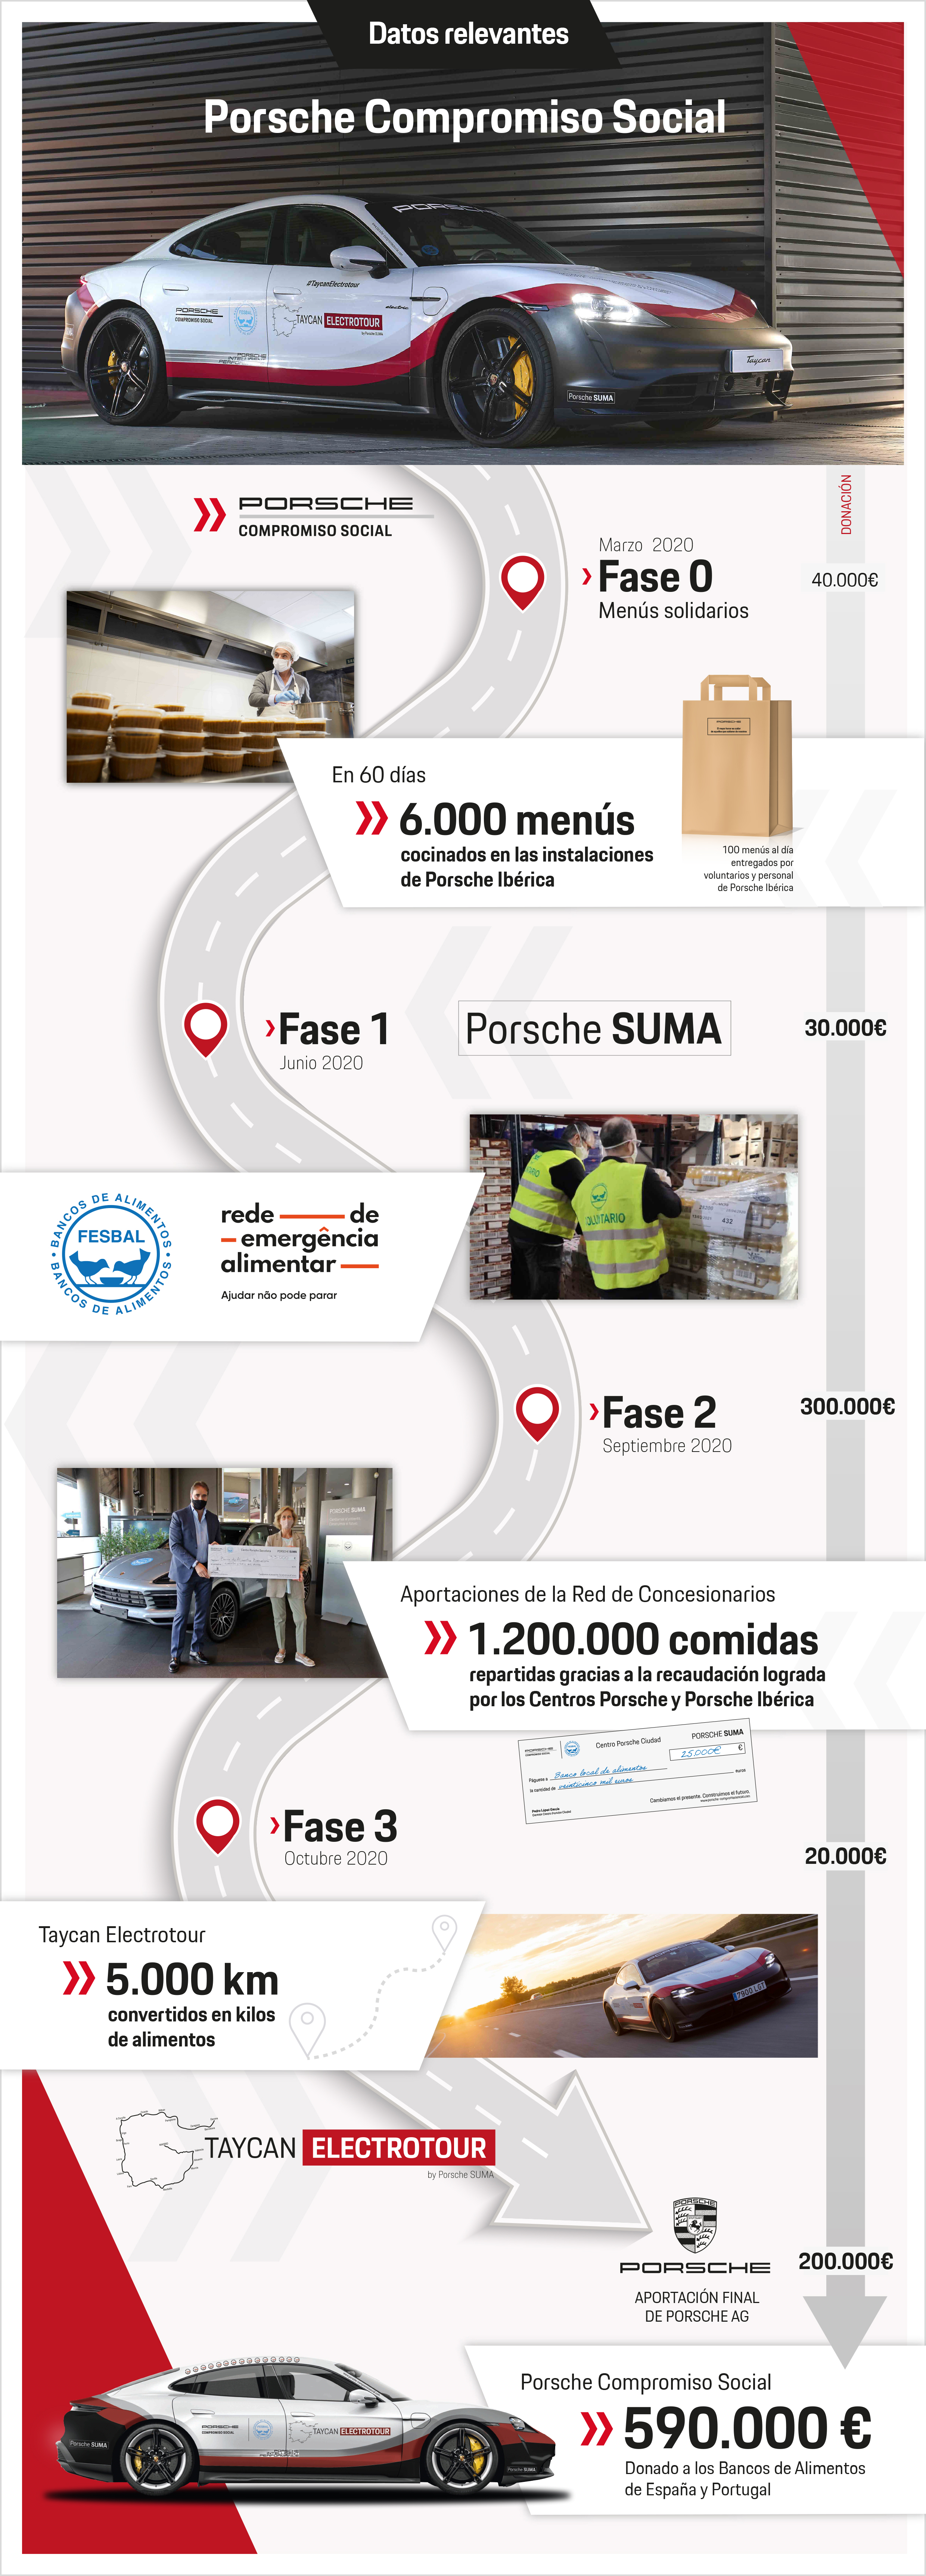 Datos relevantes Porsche Compromiso Social 2020, infografía, 15/01/2021, Porsche Ibérica